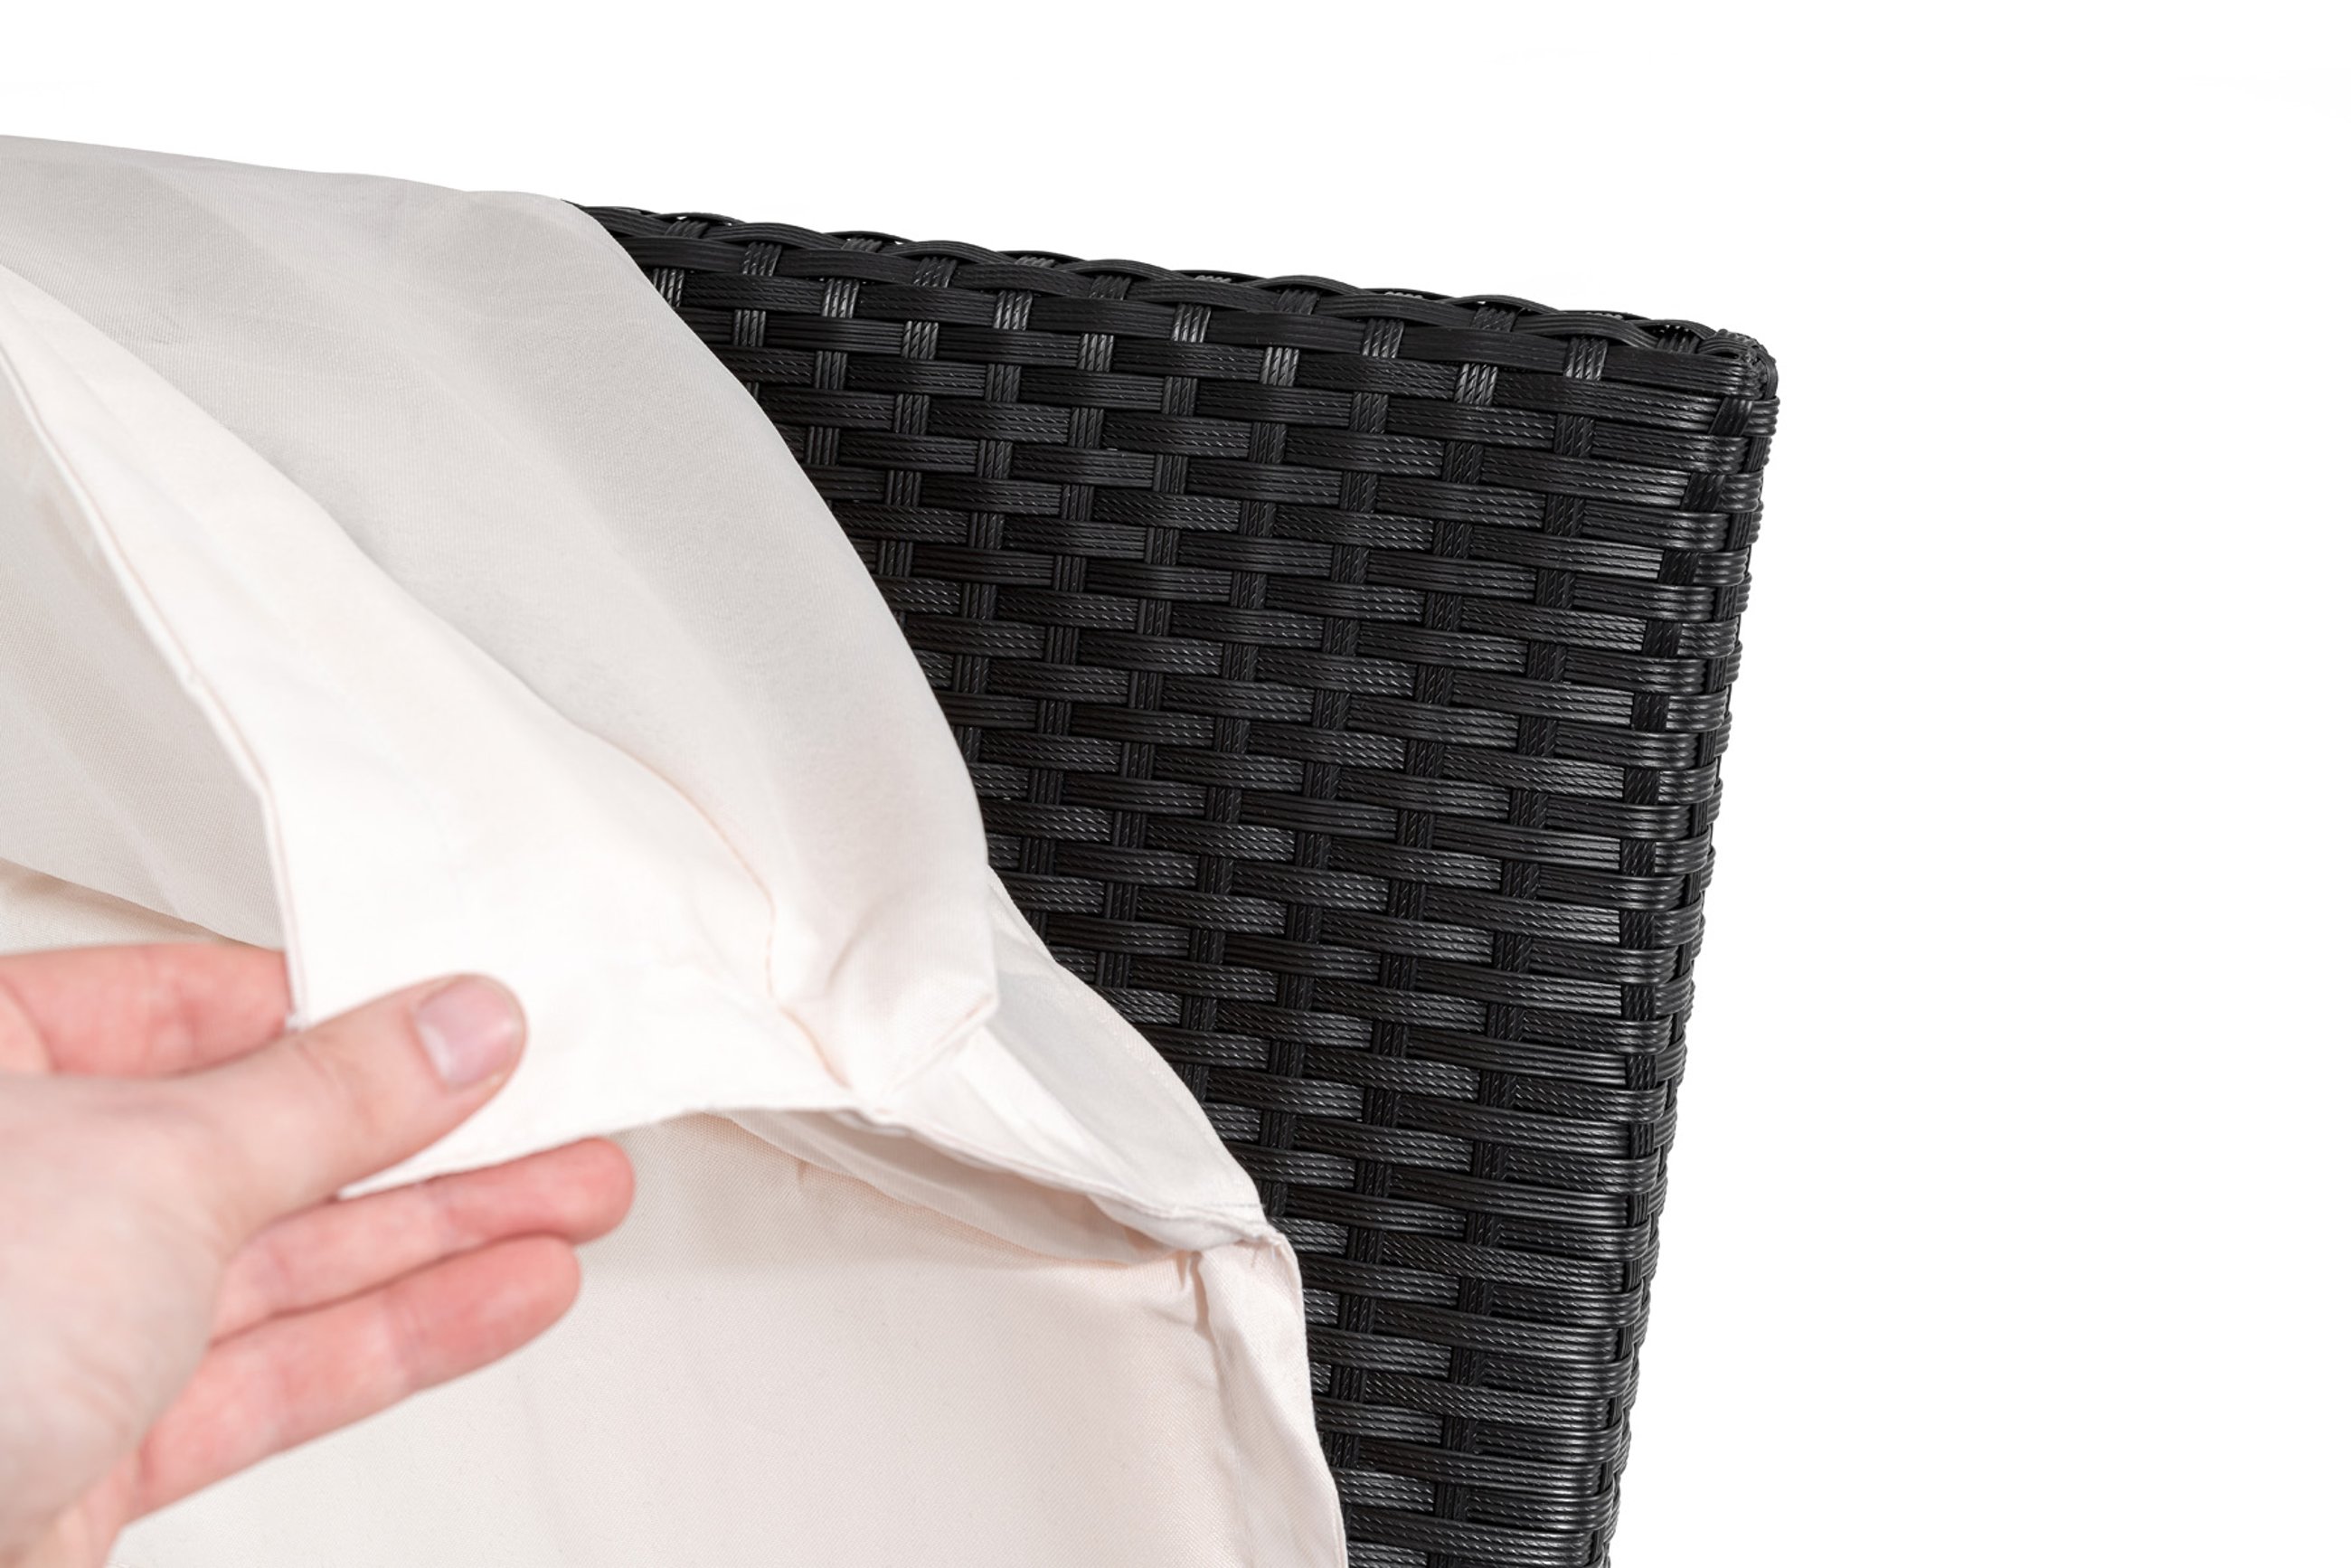 W trosce o Twój komfort leżak ogrodowy Ciampino czarny wyposażony został w dużą, miękką poduszkę o grubości 4 cm